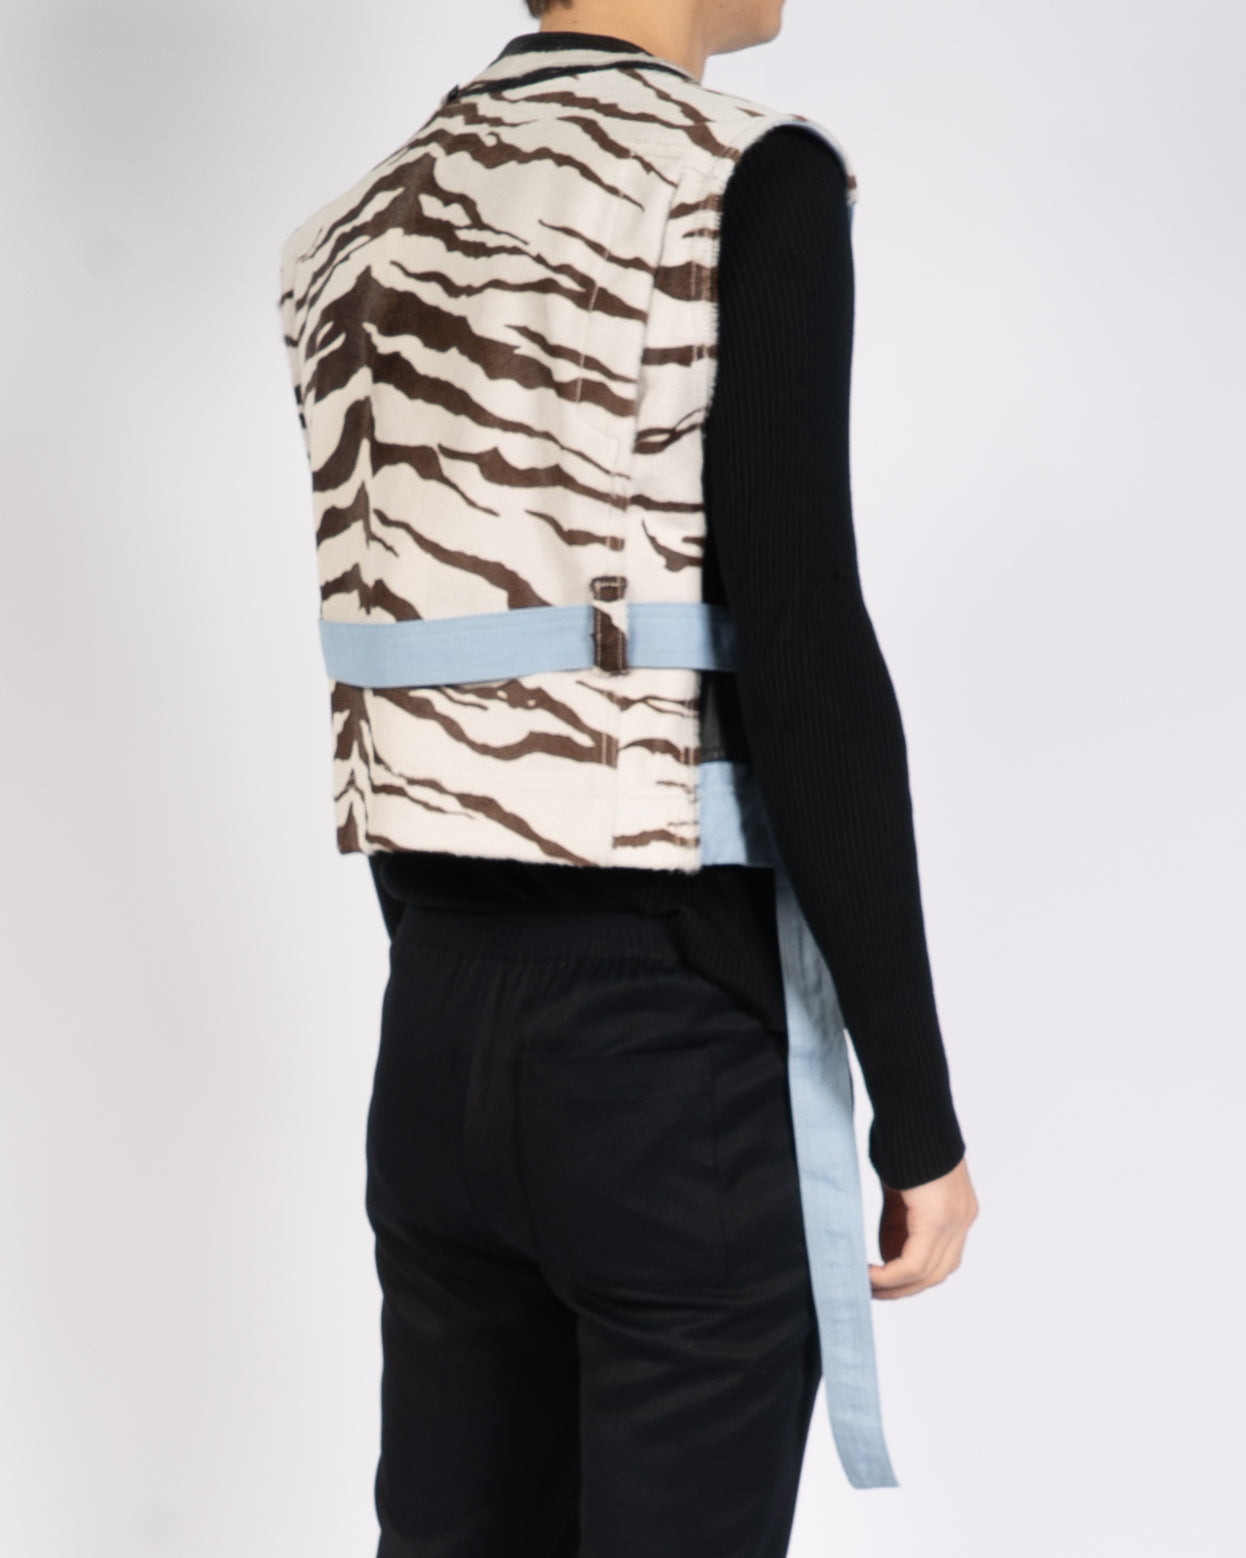 SS20 Mixed Fabric Leo Waist-Coat